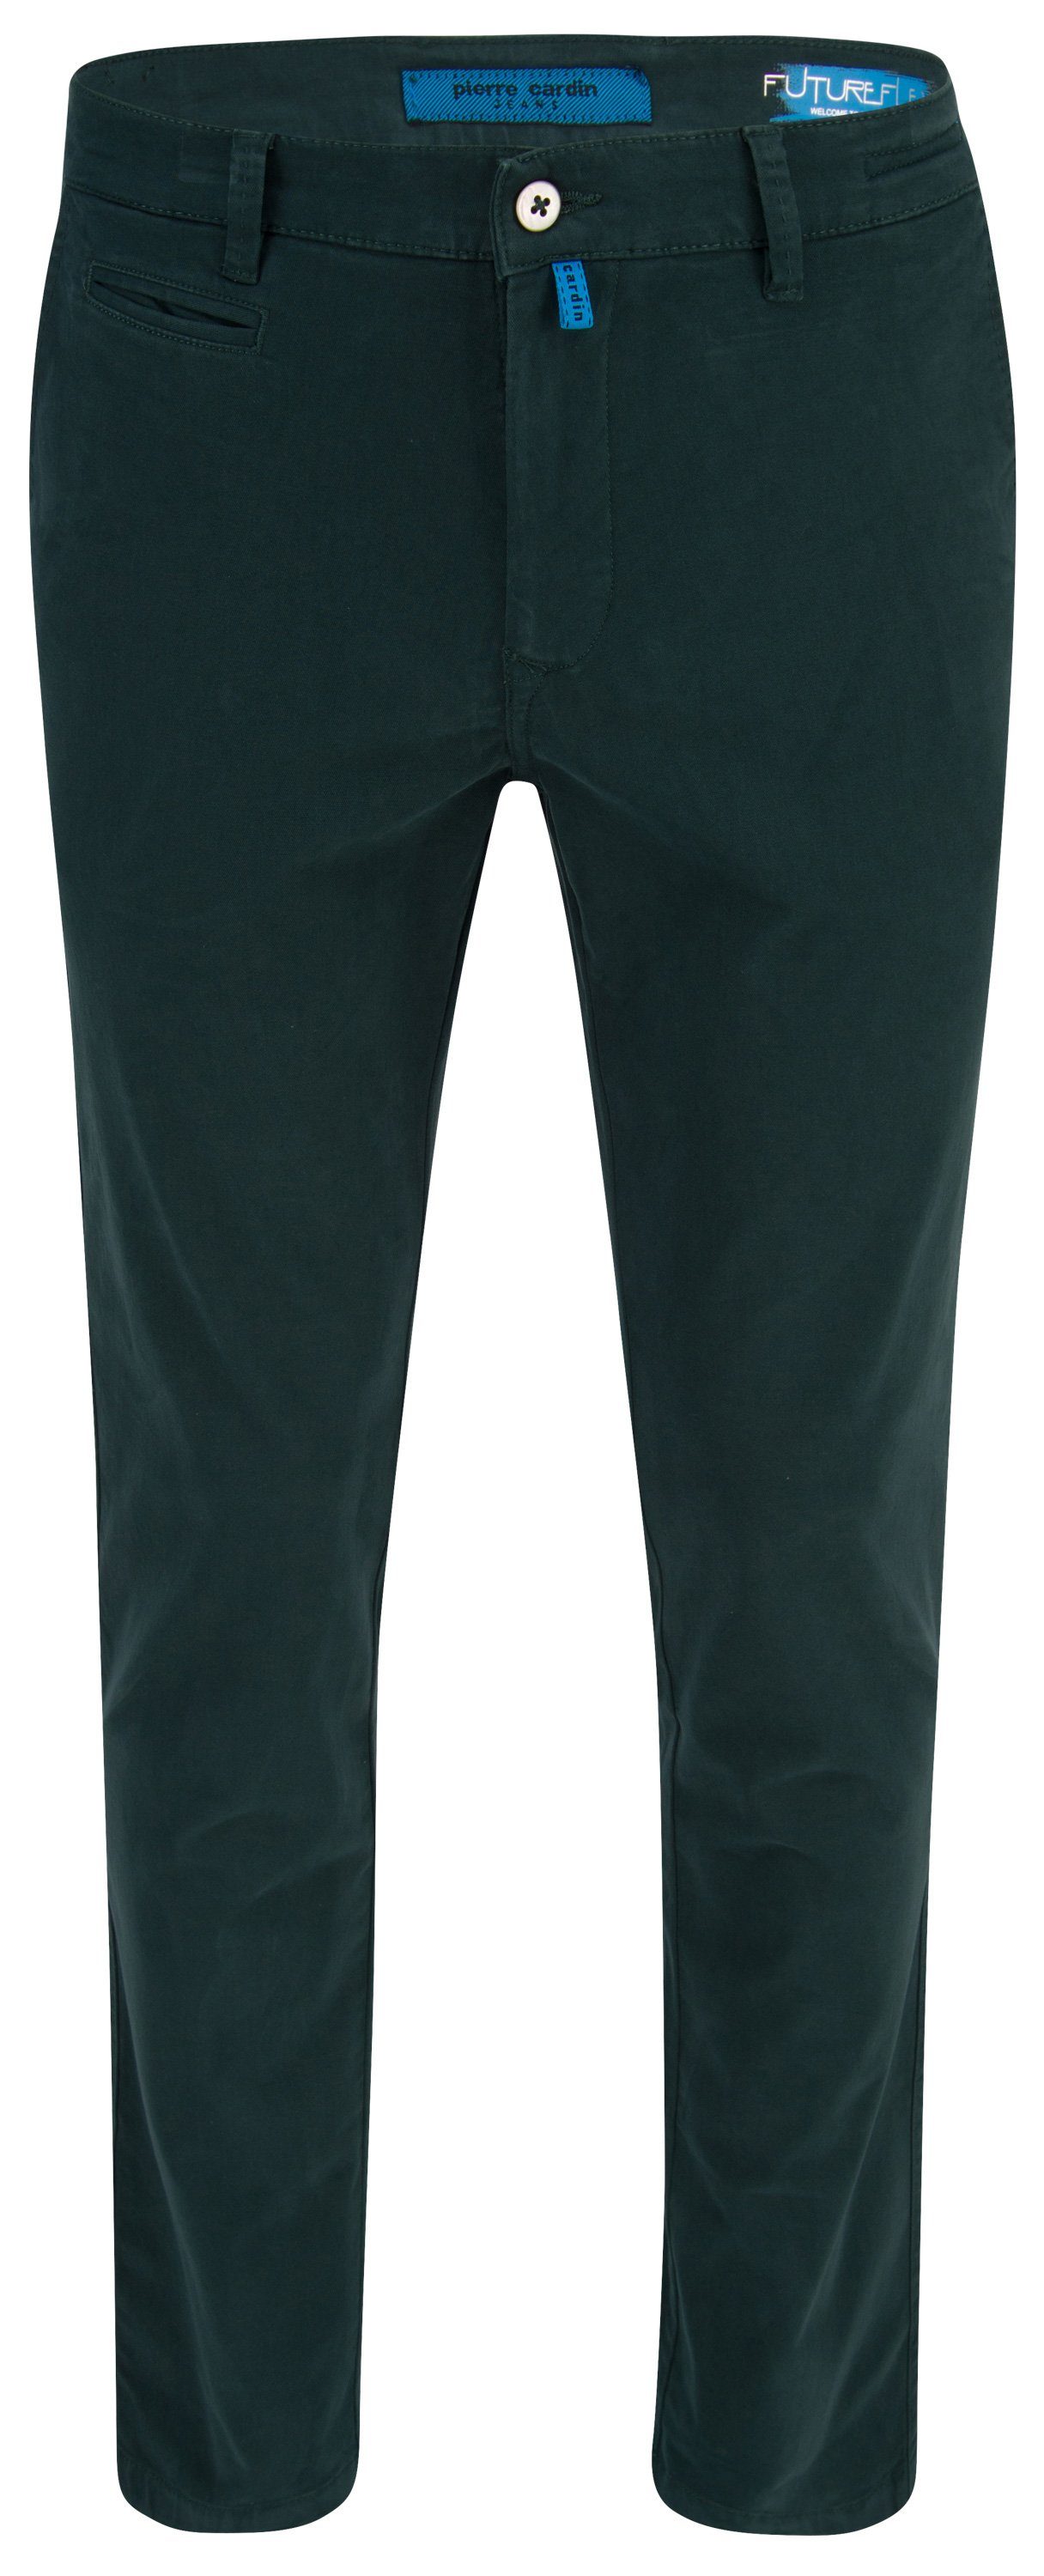 Pierre Cardin FUTUREFLEX green CARDIN 33757 fir LYON PIERRE 5-Pocket-Jeans 2233.75